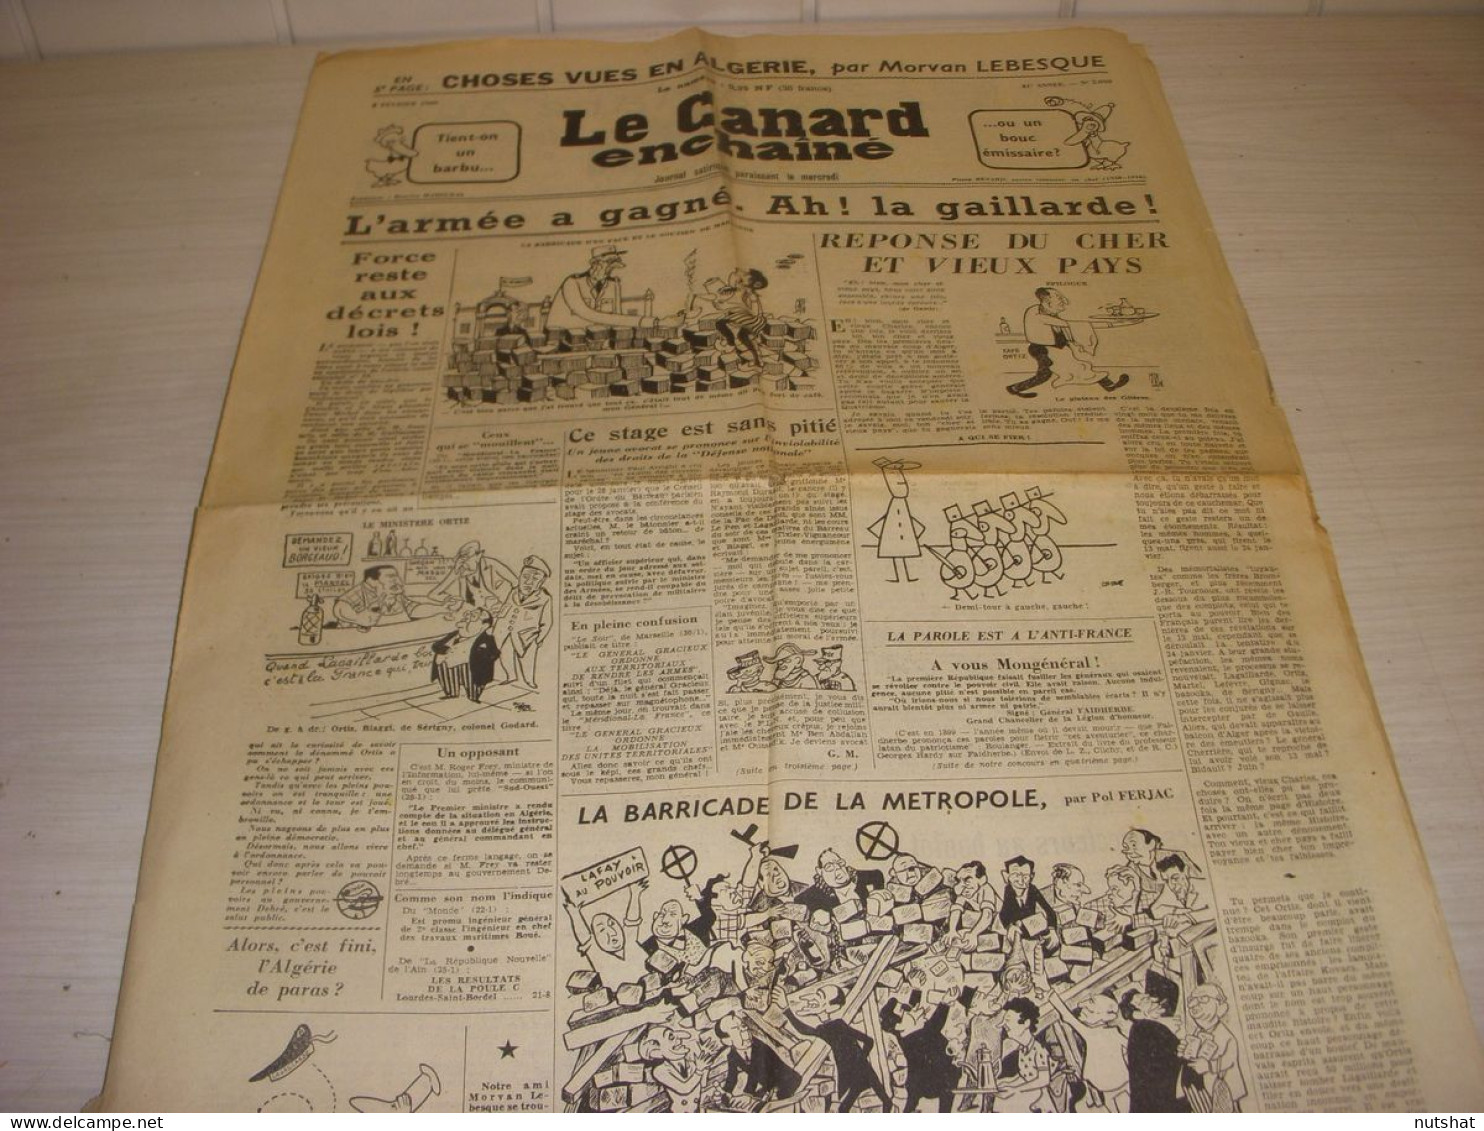 CANARD ENCHAINE 2050 03.02.1960 TCHERNIA Victoria THERAME CHOSES VUES En ALGERIE - Politique